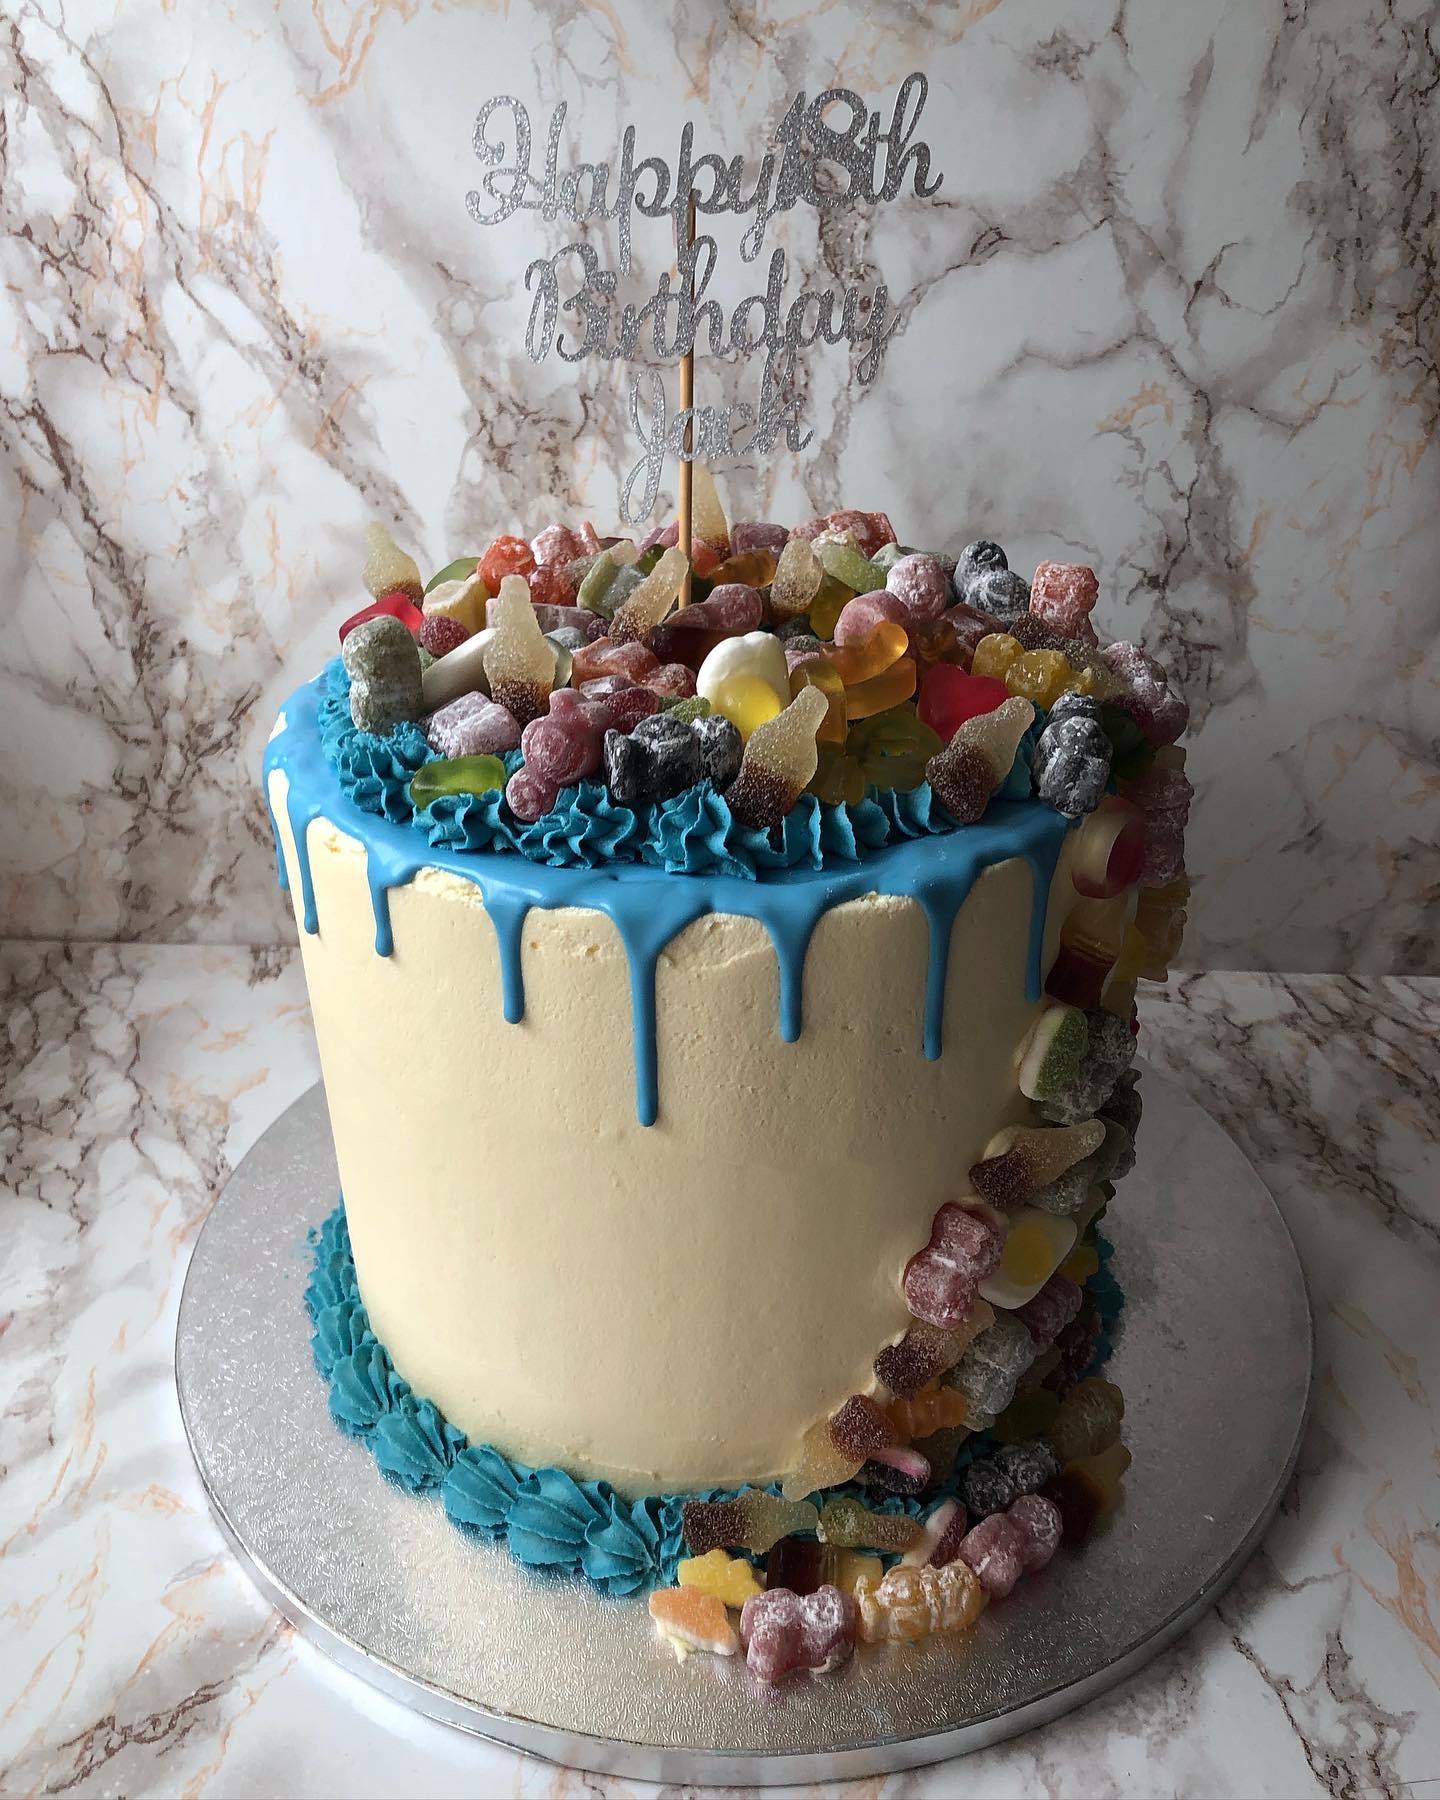 Premium Photo | Bright birthday cake with chocolate